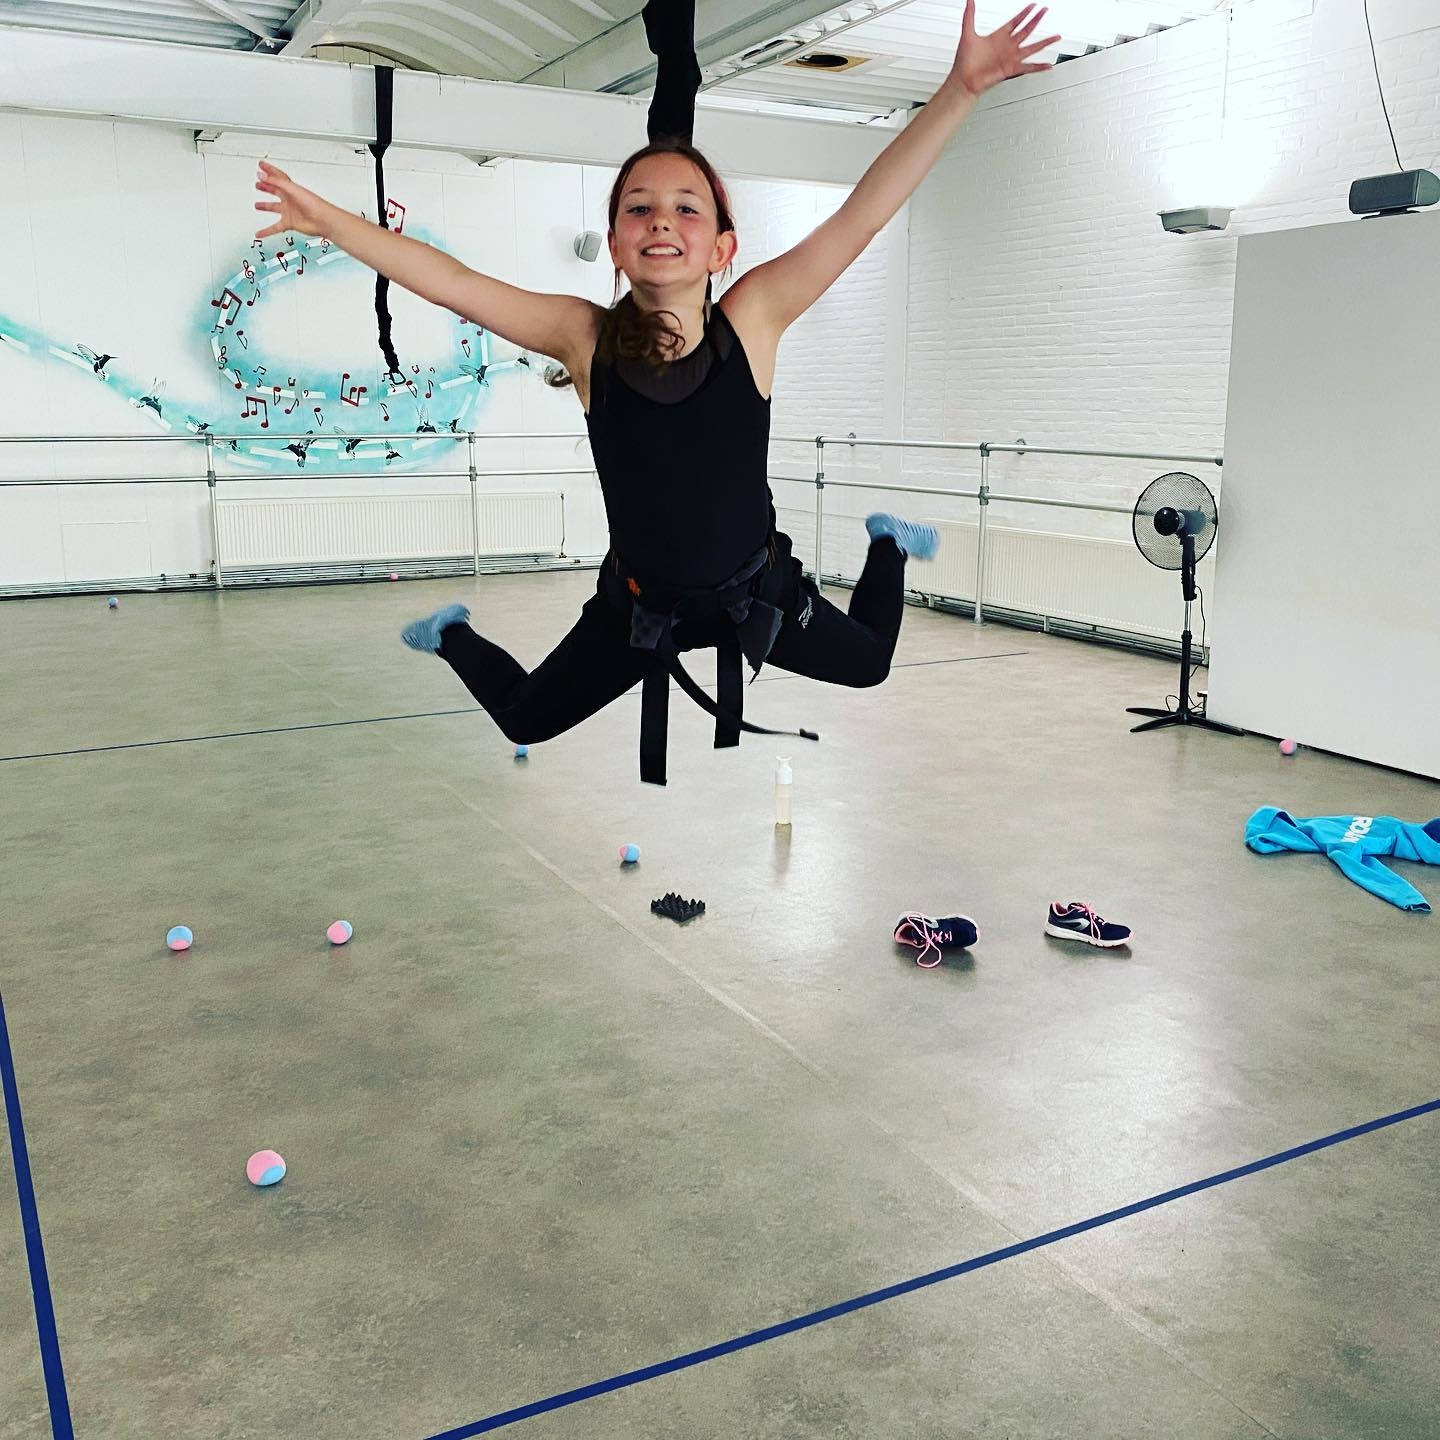 Bungee super fly & Aerial yoga Maandag 25 april om 13.00 -15.00 uur 

Komt je zoontje of dochter met ons mee vliegen?? Dit is je kans! Meld je zoon of dochter snel aan

#bungeejumping #bungeefitness #bungeeworkout #bungeesuperflykids #delfgauw #hoekvanholland #rotterdam #delft #nederland #flyhighstudio #activiteitenkinderen